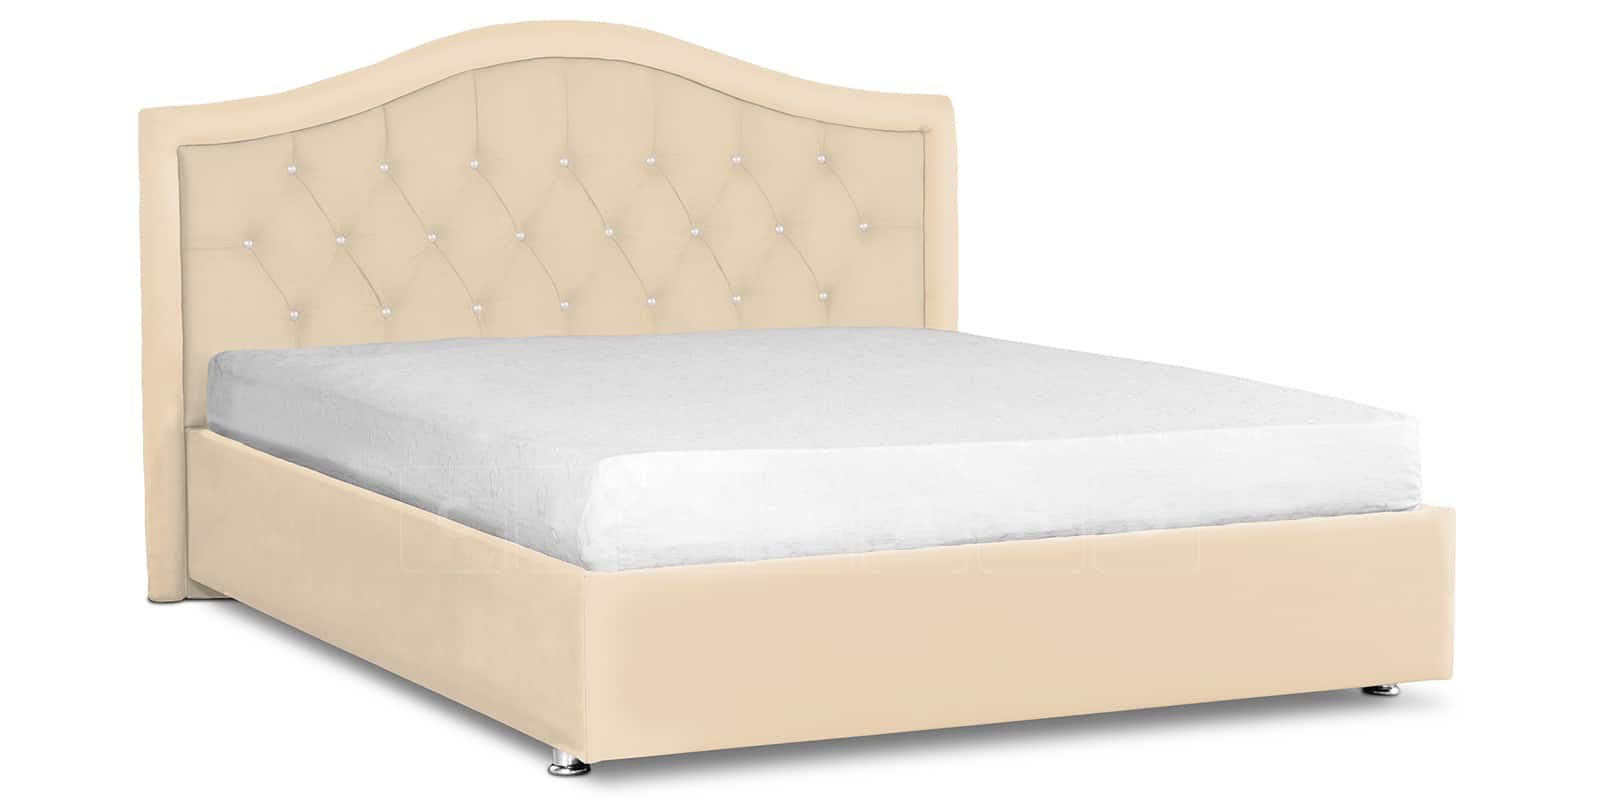 Мягкая кровать Малибу 160 см экокожа бежевый вариант 9 фото 1 | интернет-магазин Складно